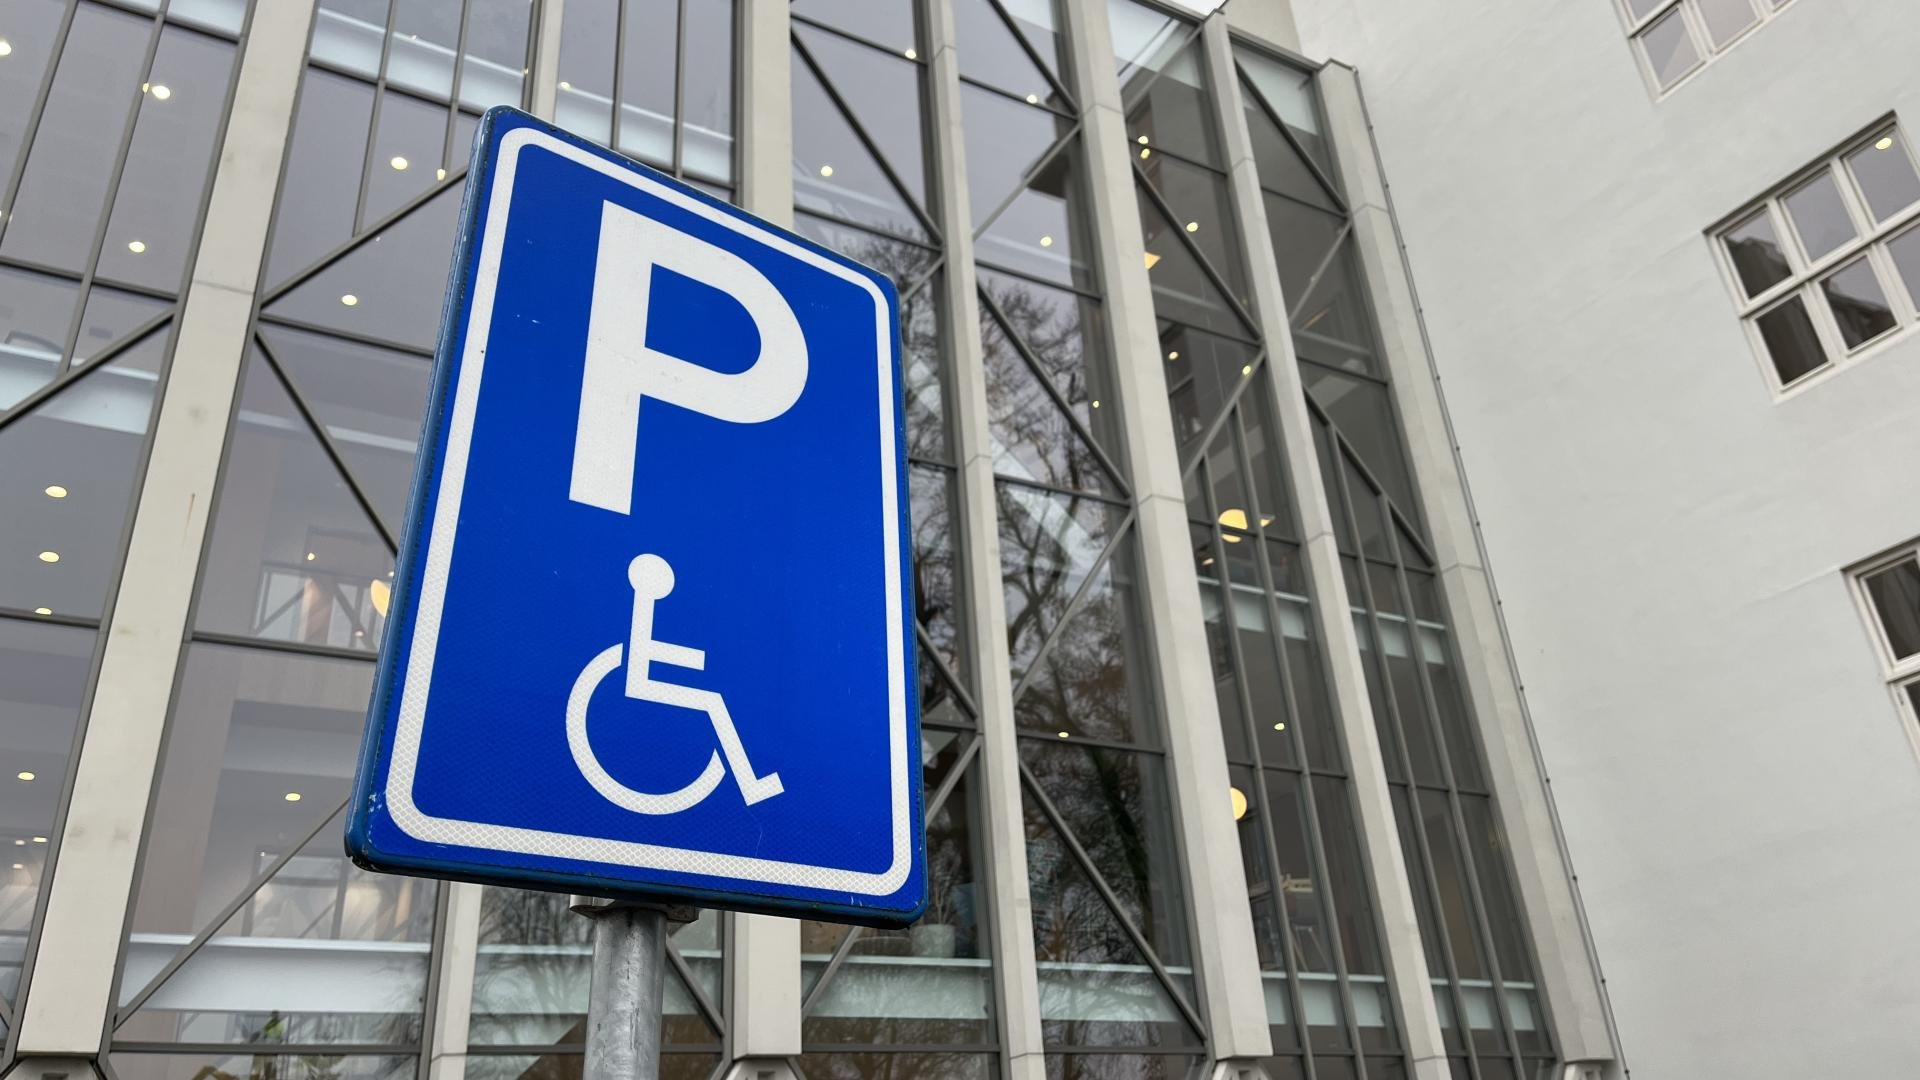 Bord gehandicaptenparkeerplaats